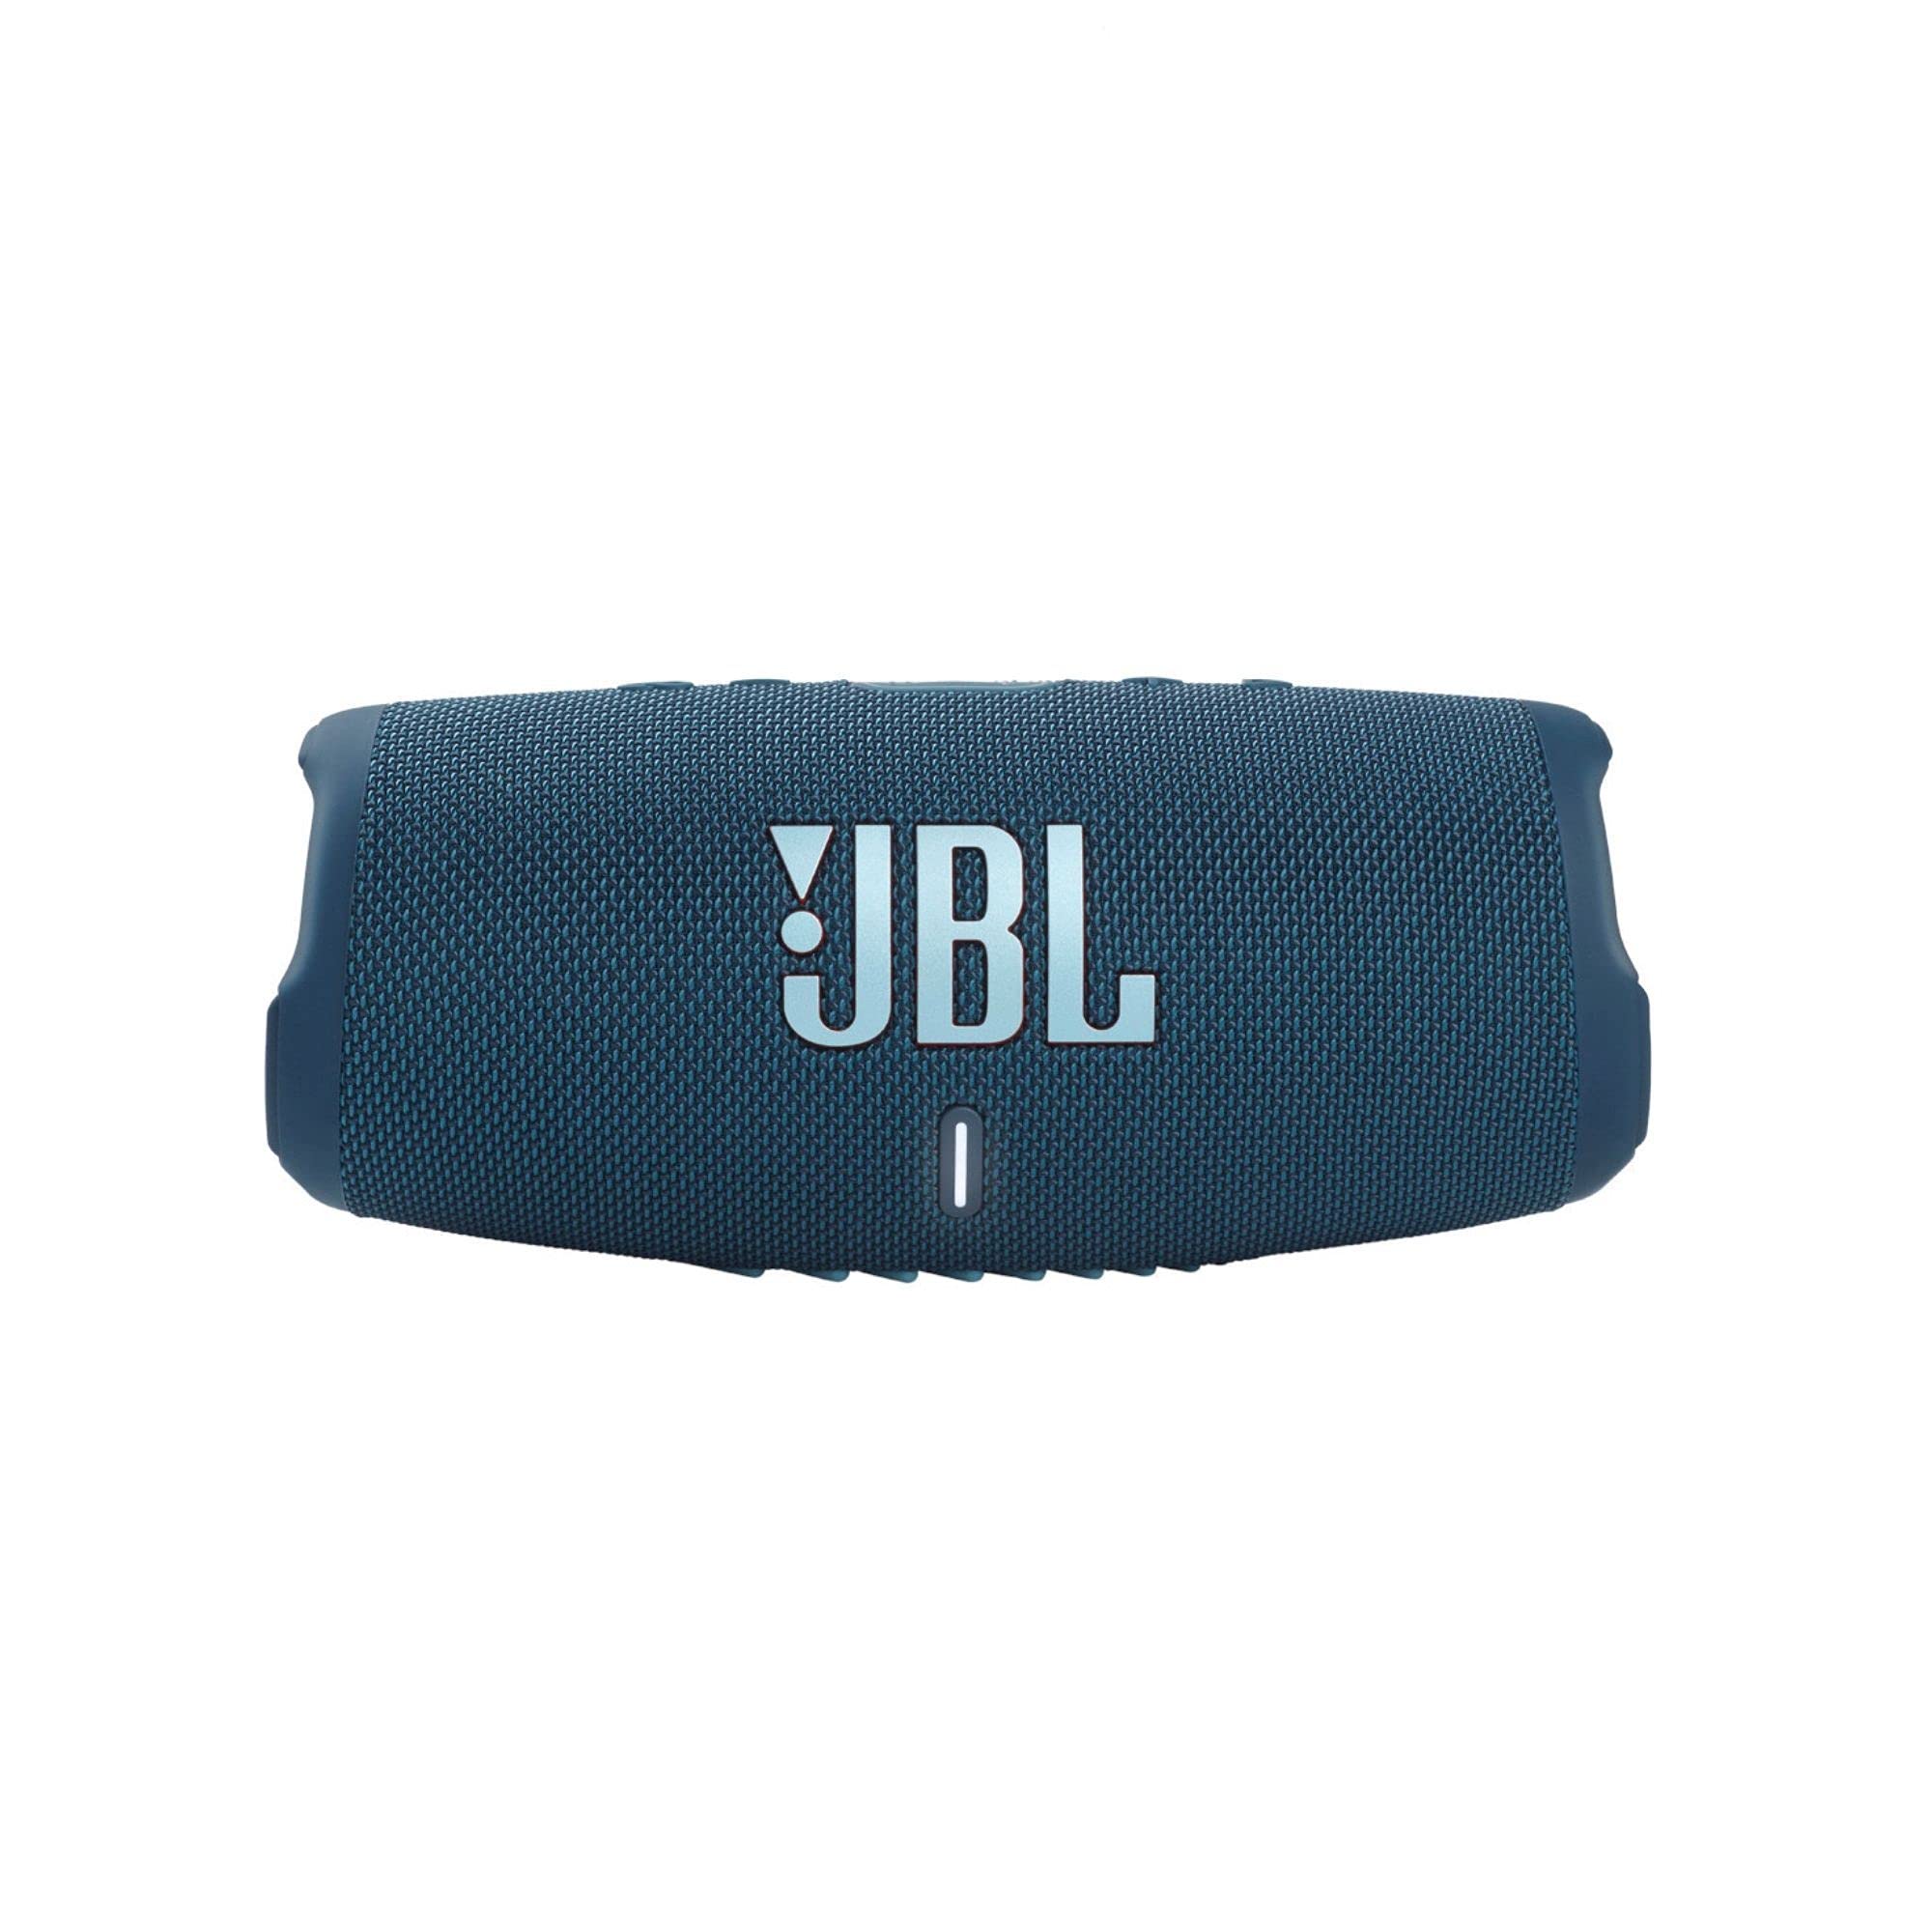  JBL चार्ज 5 - आईपी67 वॉटरप्रूफ और यूएसबी चार्ज आउट के साथ पोर्टेबल ब्लूटूथ स्पीकर...